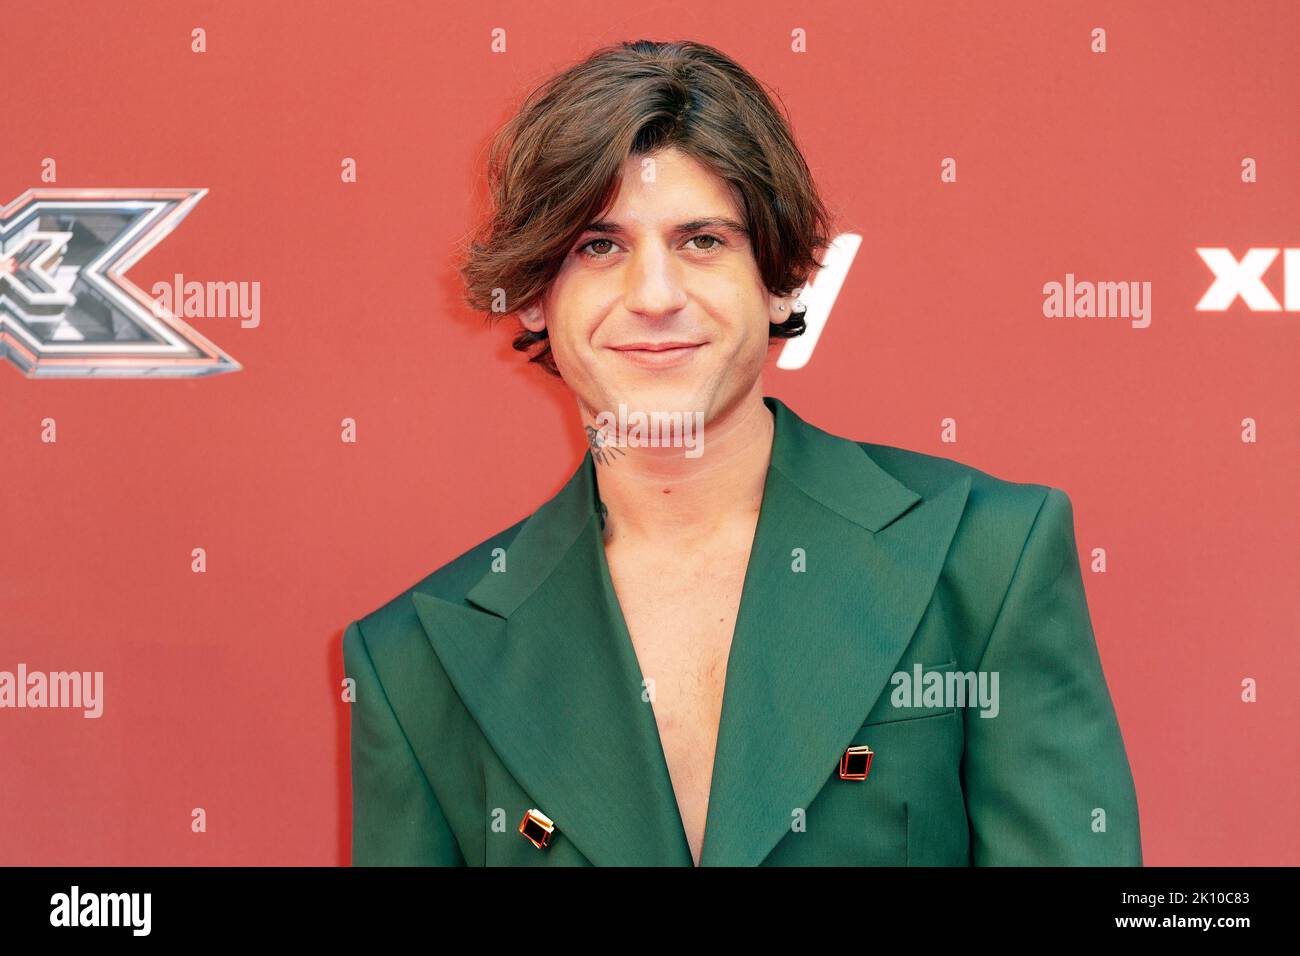 MILÁN, ITALIA - SEP 13, 2022 : El cantante Rkomi asiste a la rueda de prensa de X Factor Italia 2022 en el Área Pergolesi de Milán, Italia. Foto de stock